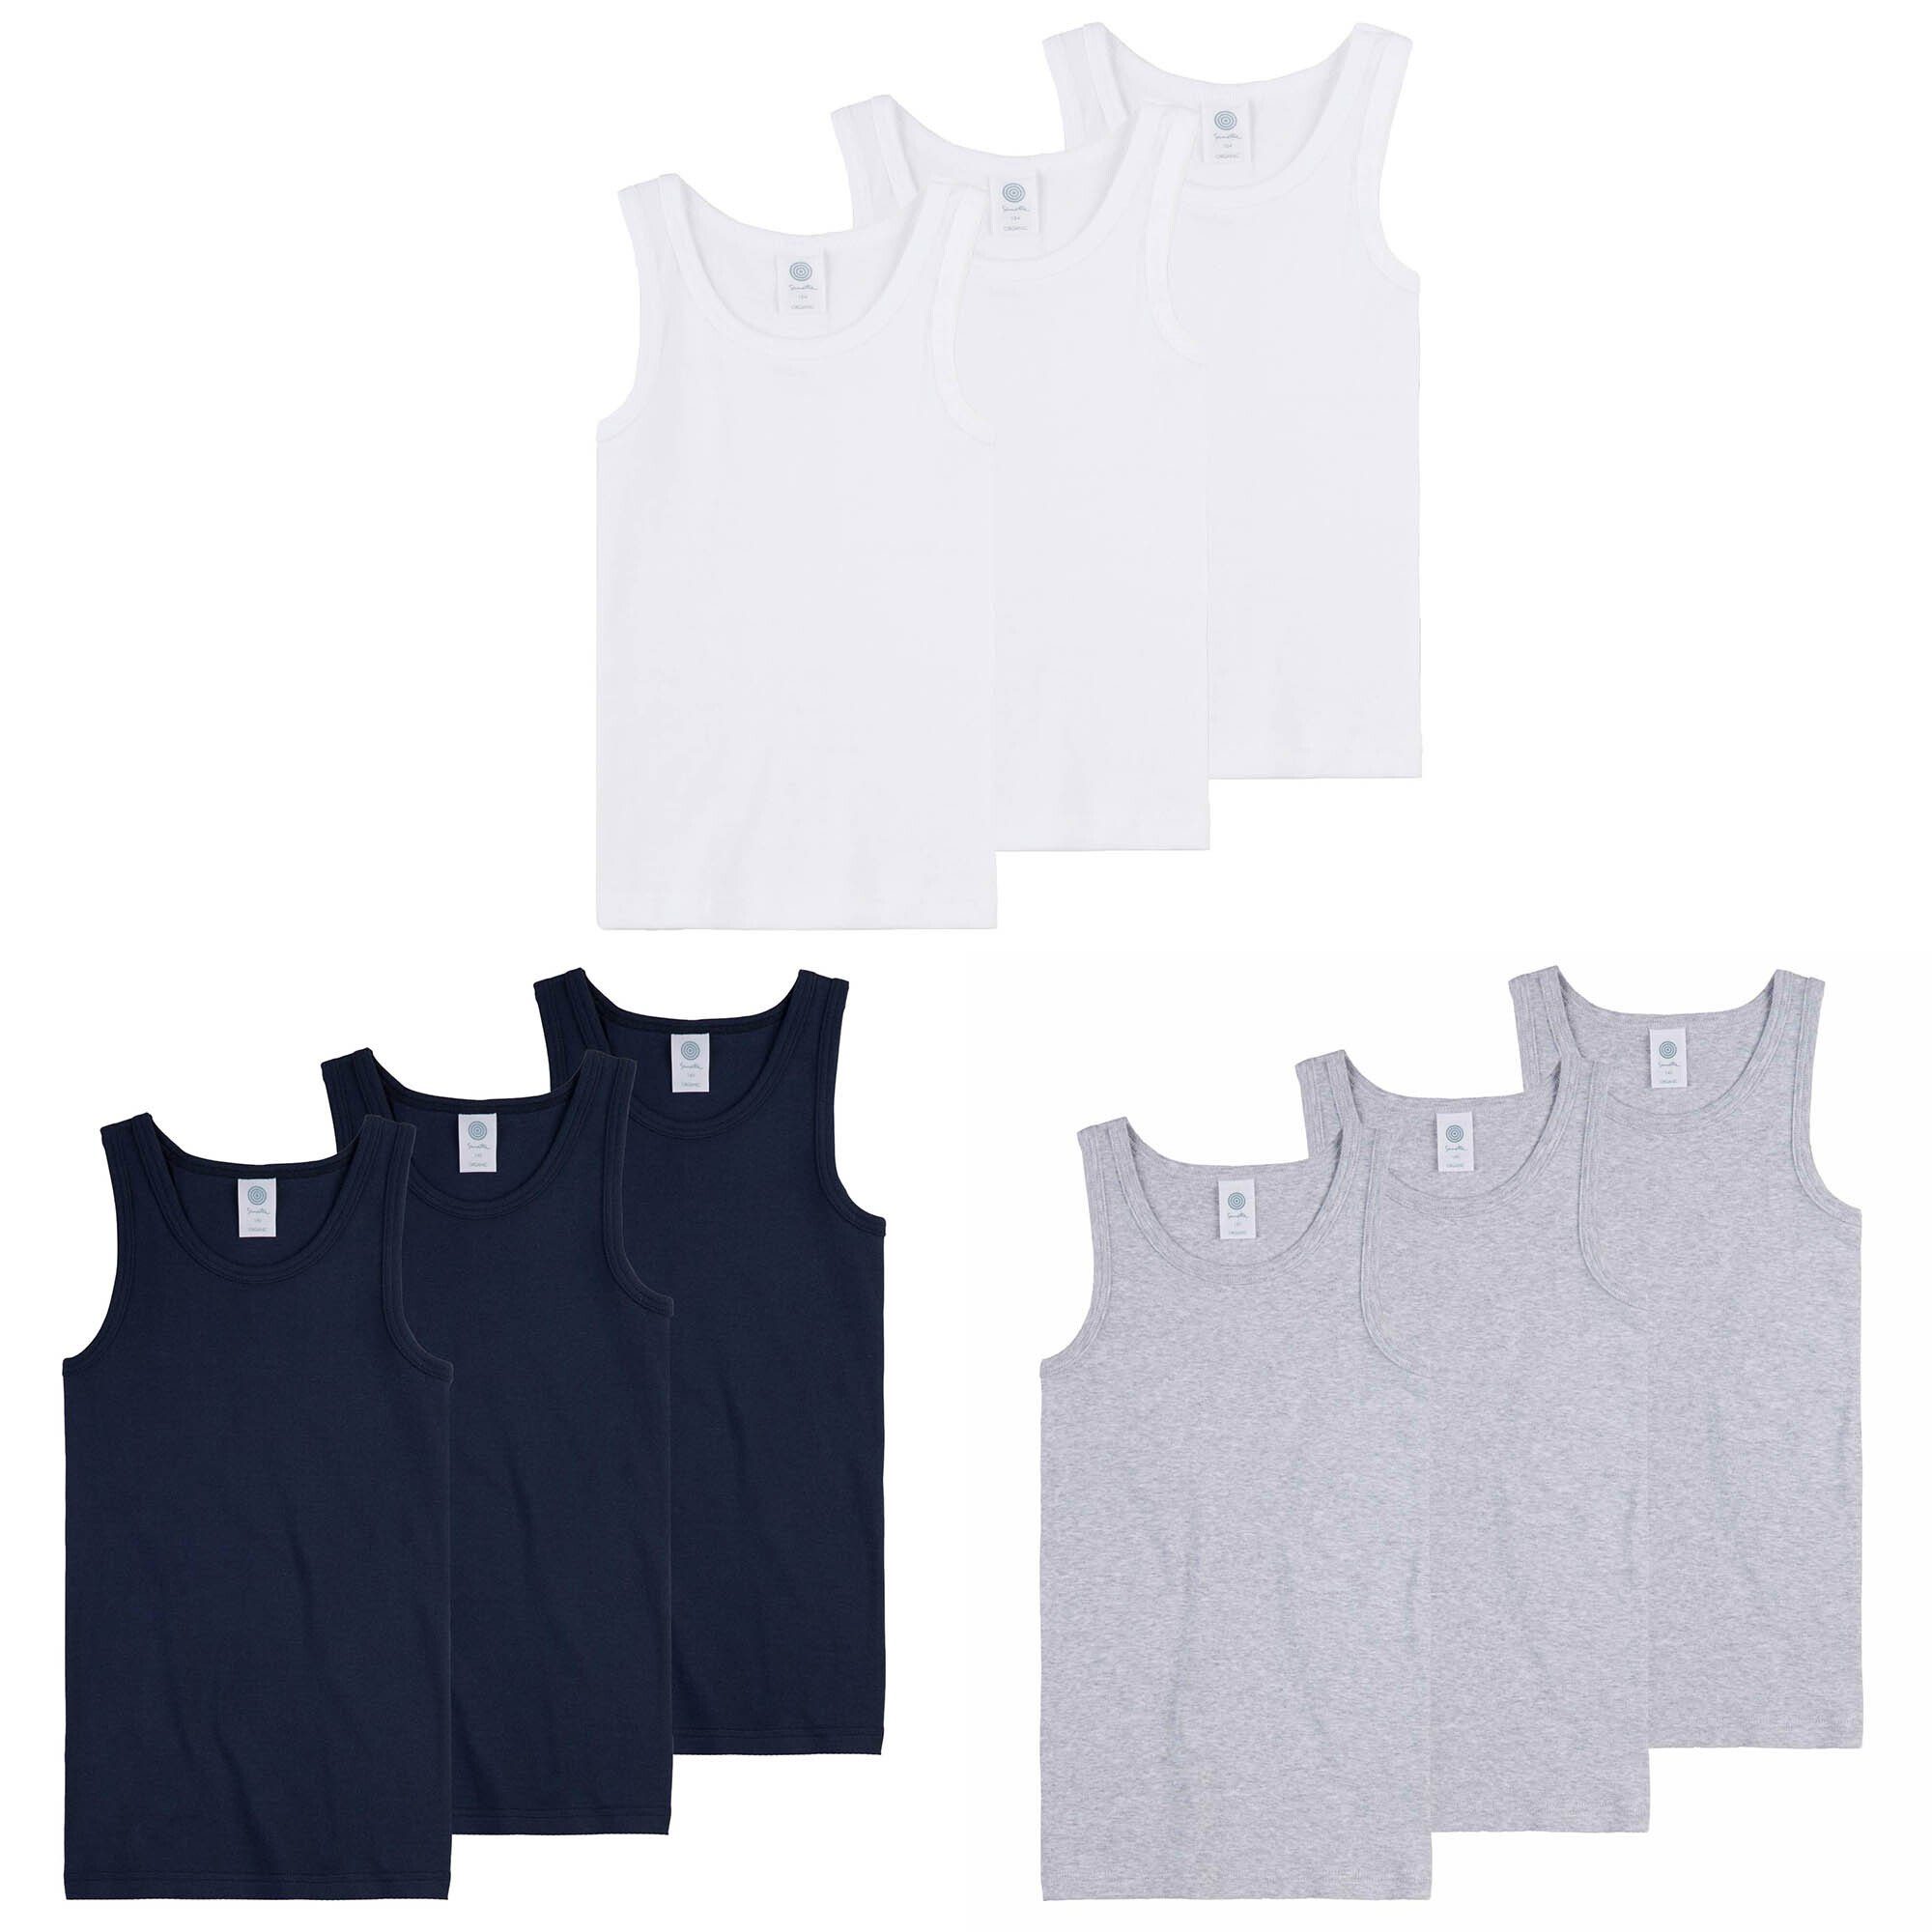 Sanetta Unterhemd Jungen Unterhemden 3er Pack Shirts ohne Arm Top Weiß | Unterhemden